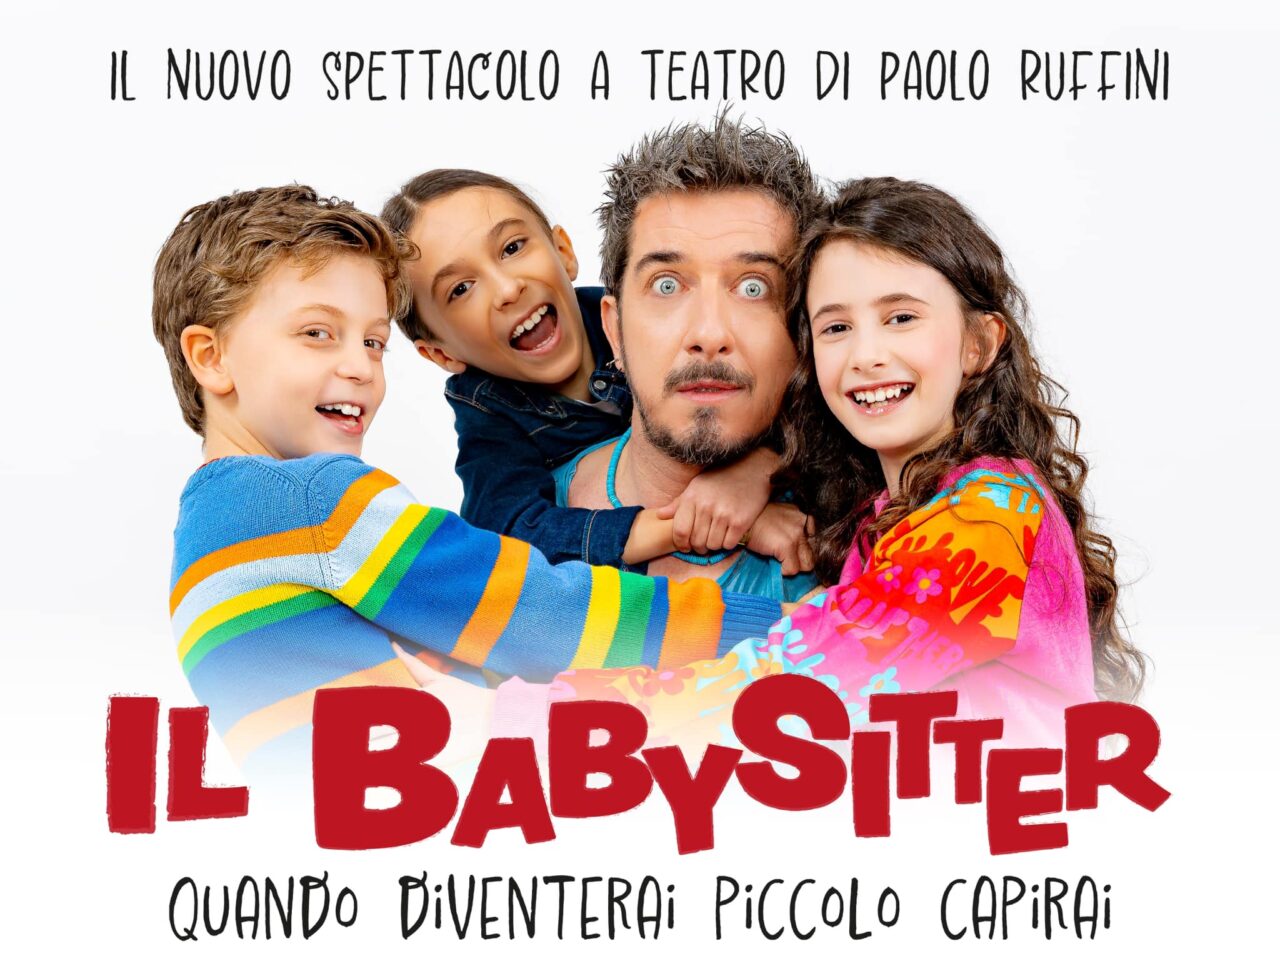 Paolo Ruffini in “Il babysitter – Quando diventerai piccolo capirai”